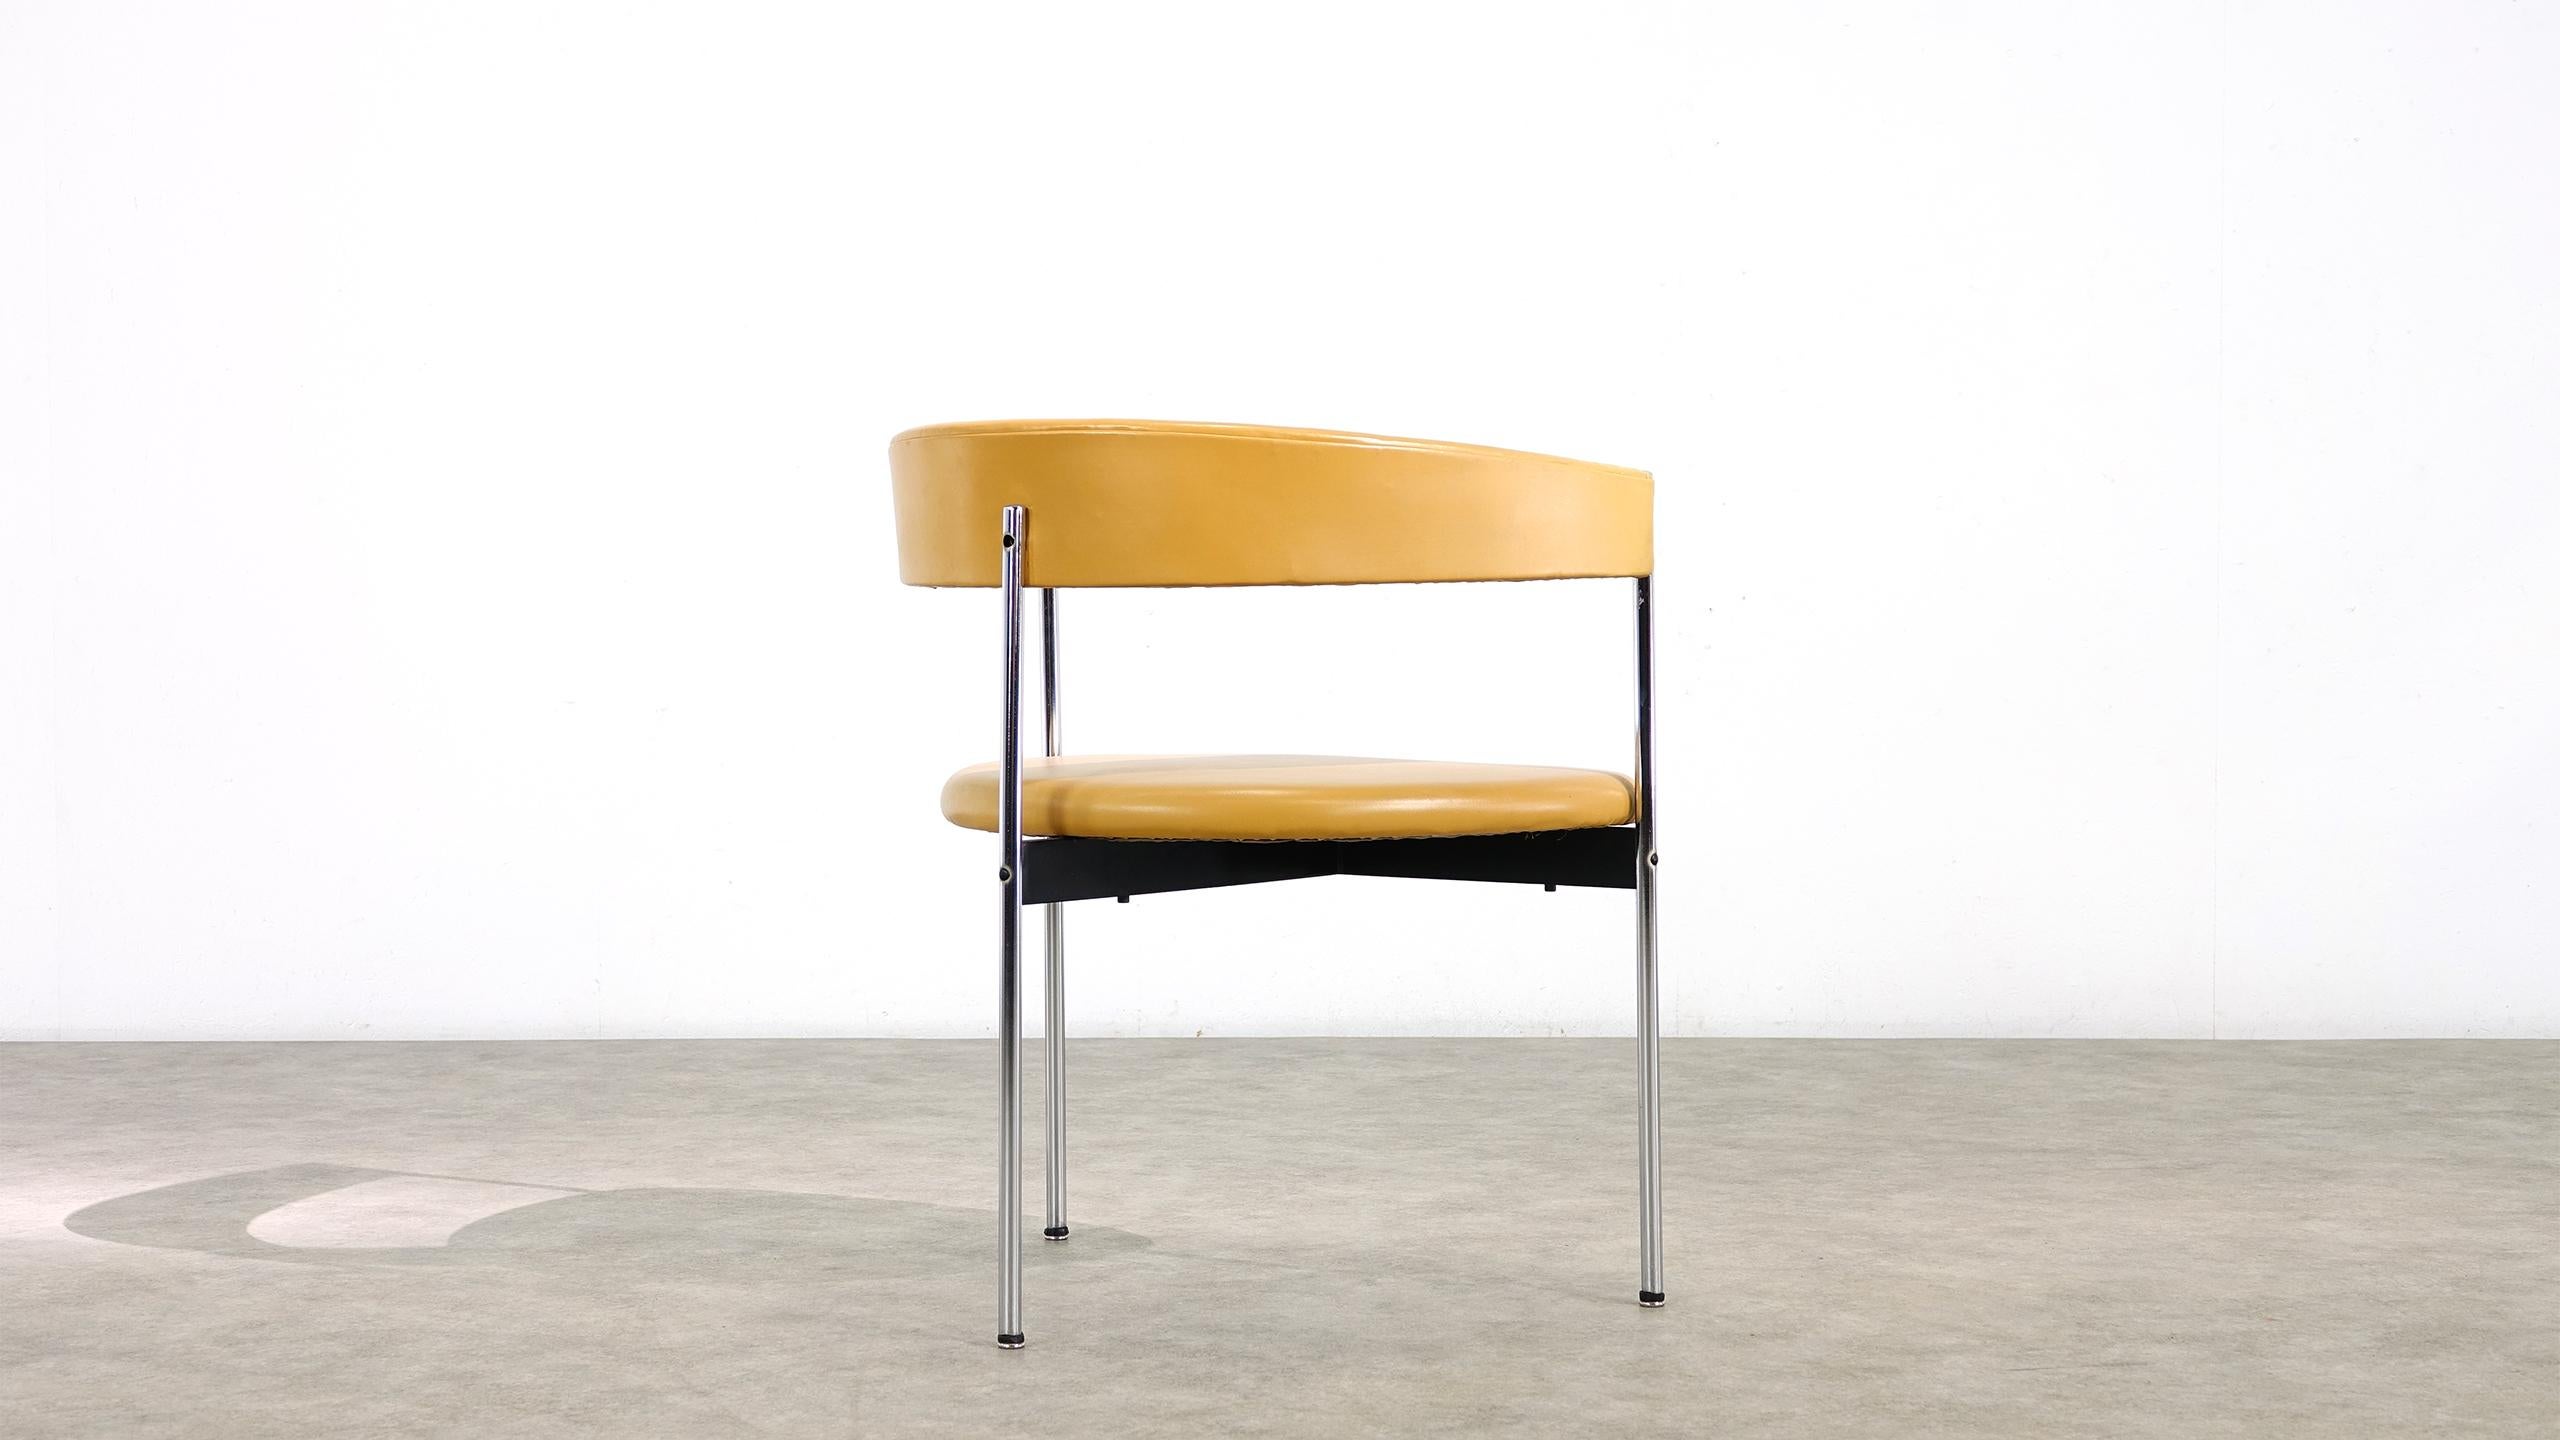 Dreibeiniger Stuhl von Dieter Waeckerlin für Idealheim. Wunderschön gestalteter Stuhl aus den 1960er Jahren. Seltene dreibeinige Konstruktion, mit grünem Kunstleder bezogen.
Er hat leichte Gebrauchsspuren, ist aber insgesamt in gutem Zustand.